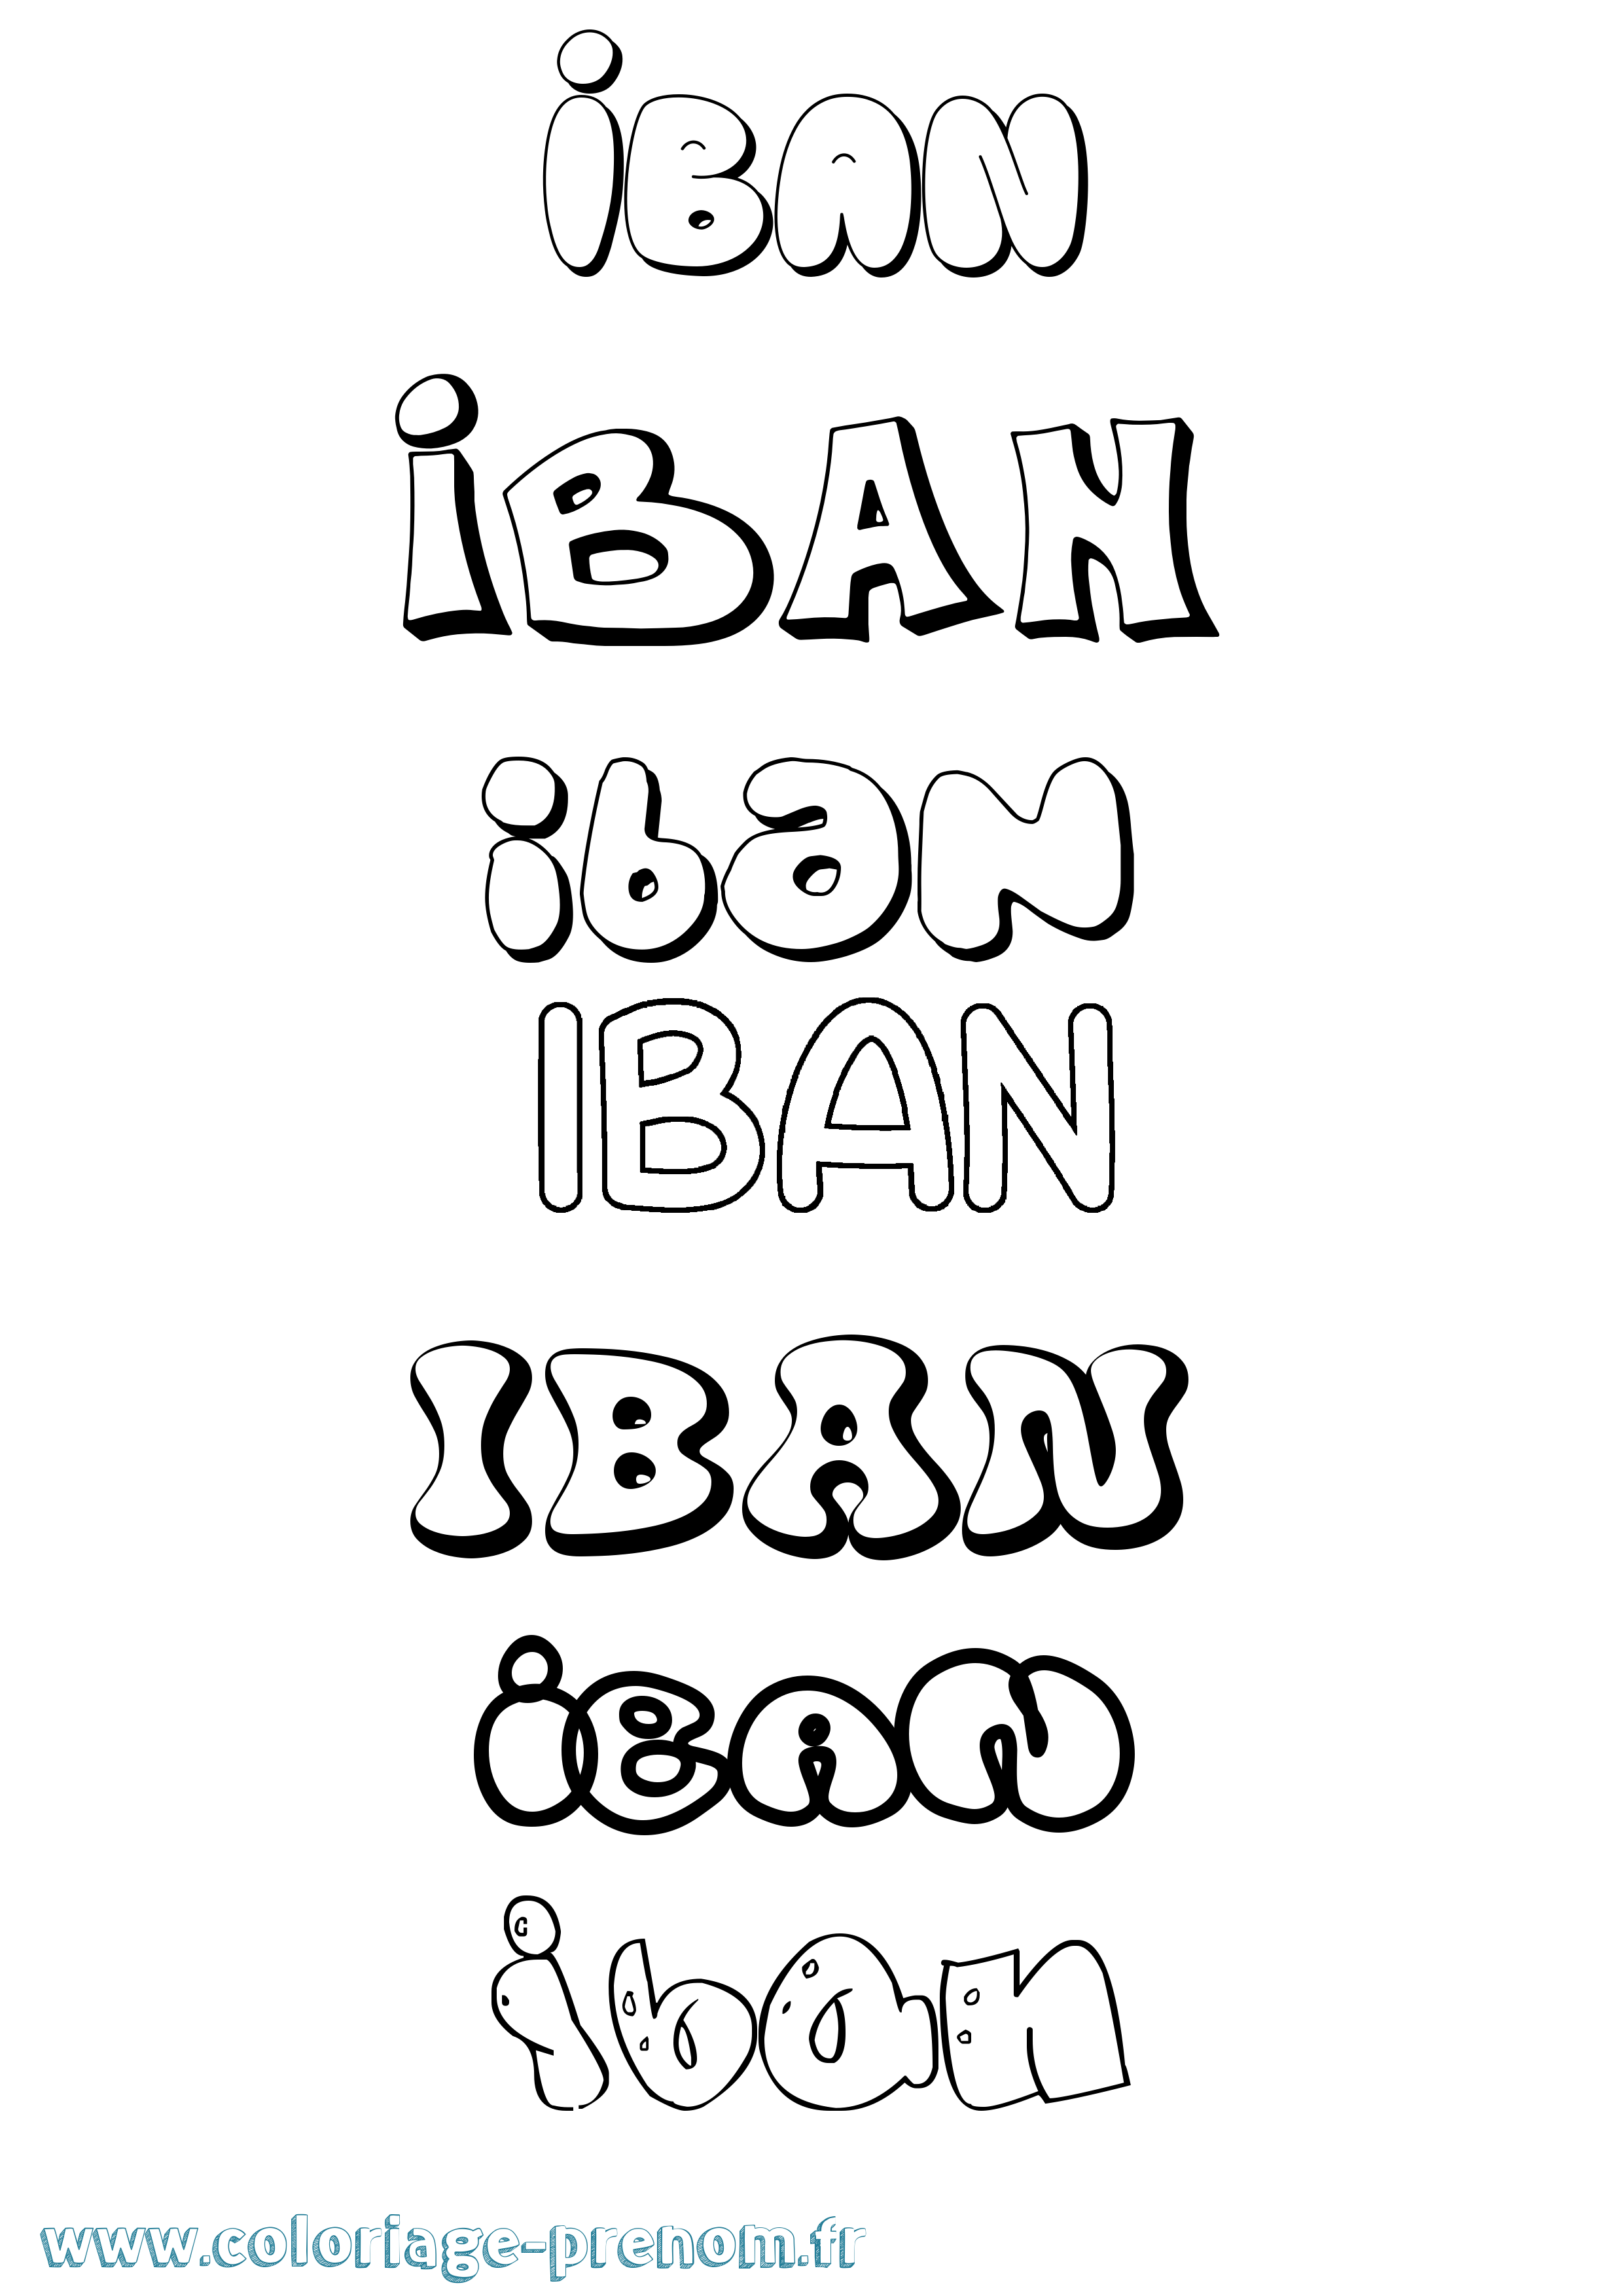 Coloriage prénom Iban